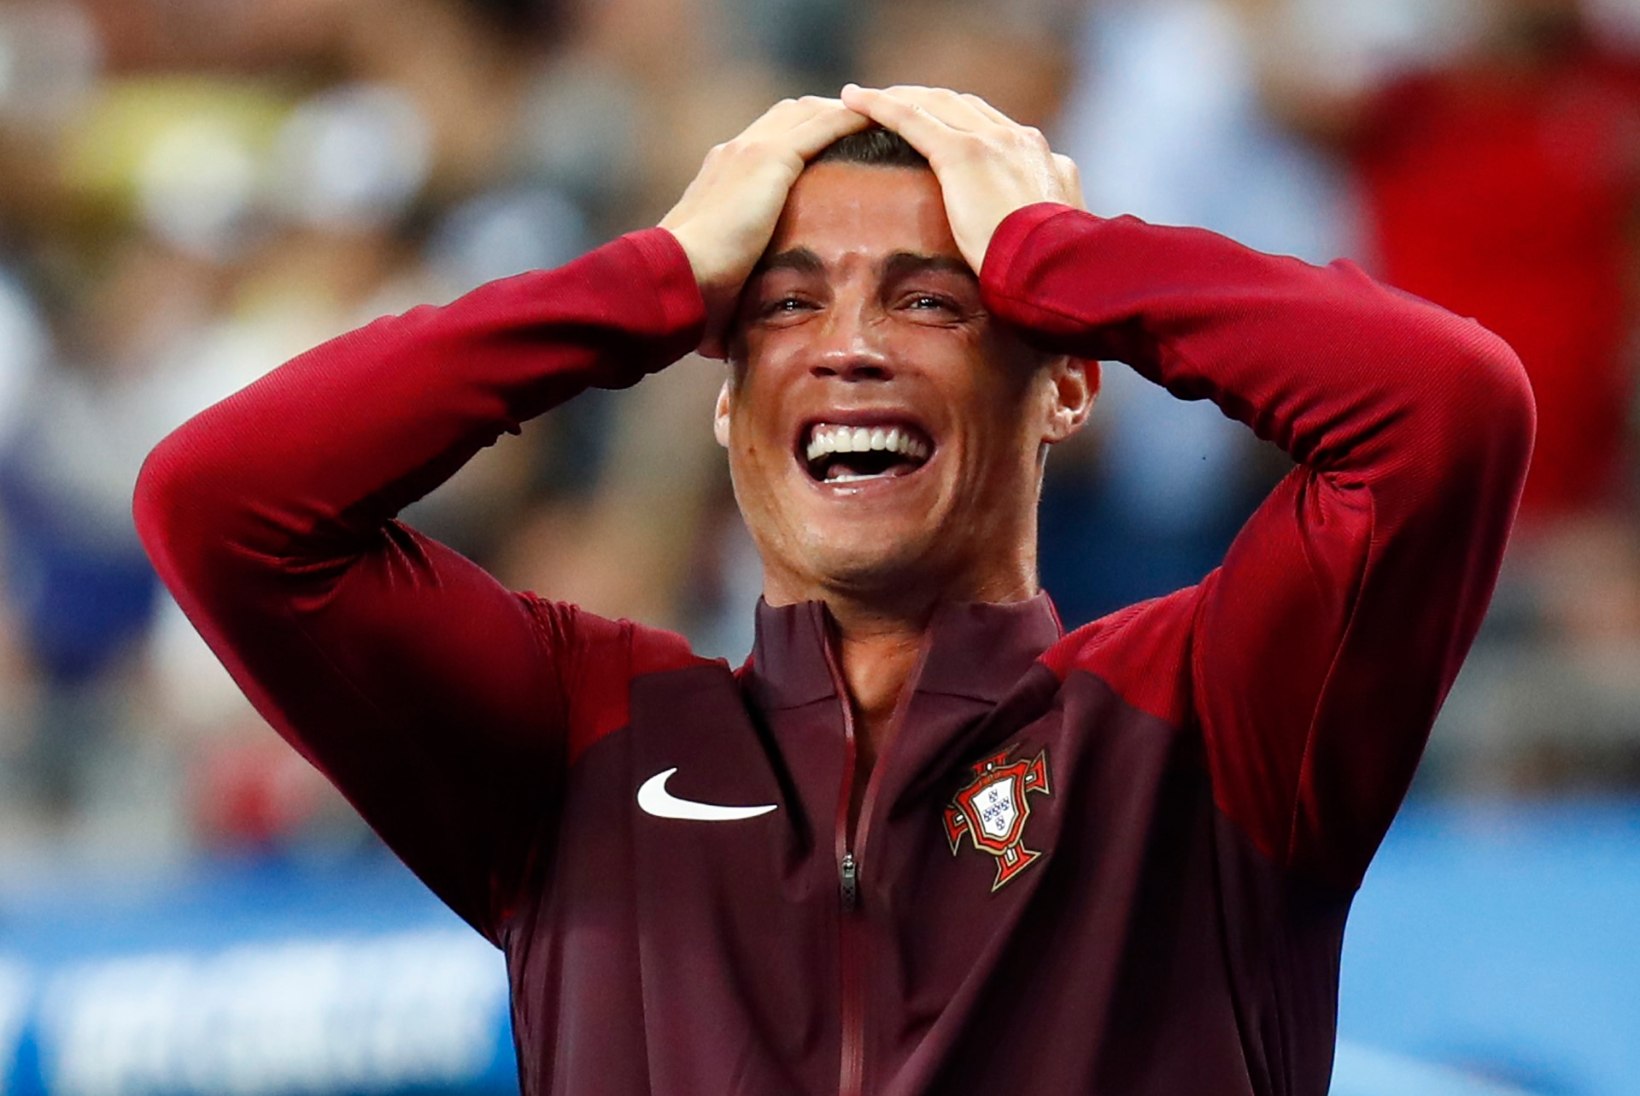 ÕHTULEHT PARIISIS | Ronaldo langes, aga Portugal keeldus ning pani Prantsusmaa ahastama